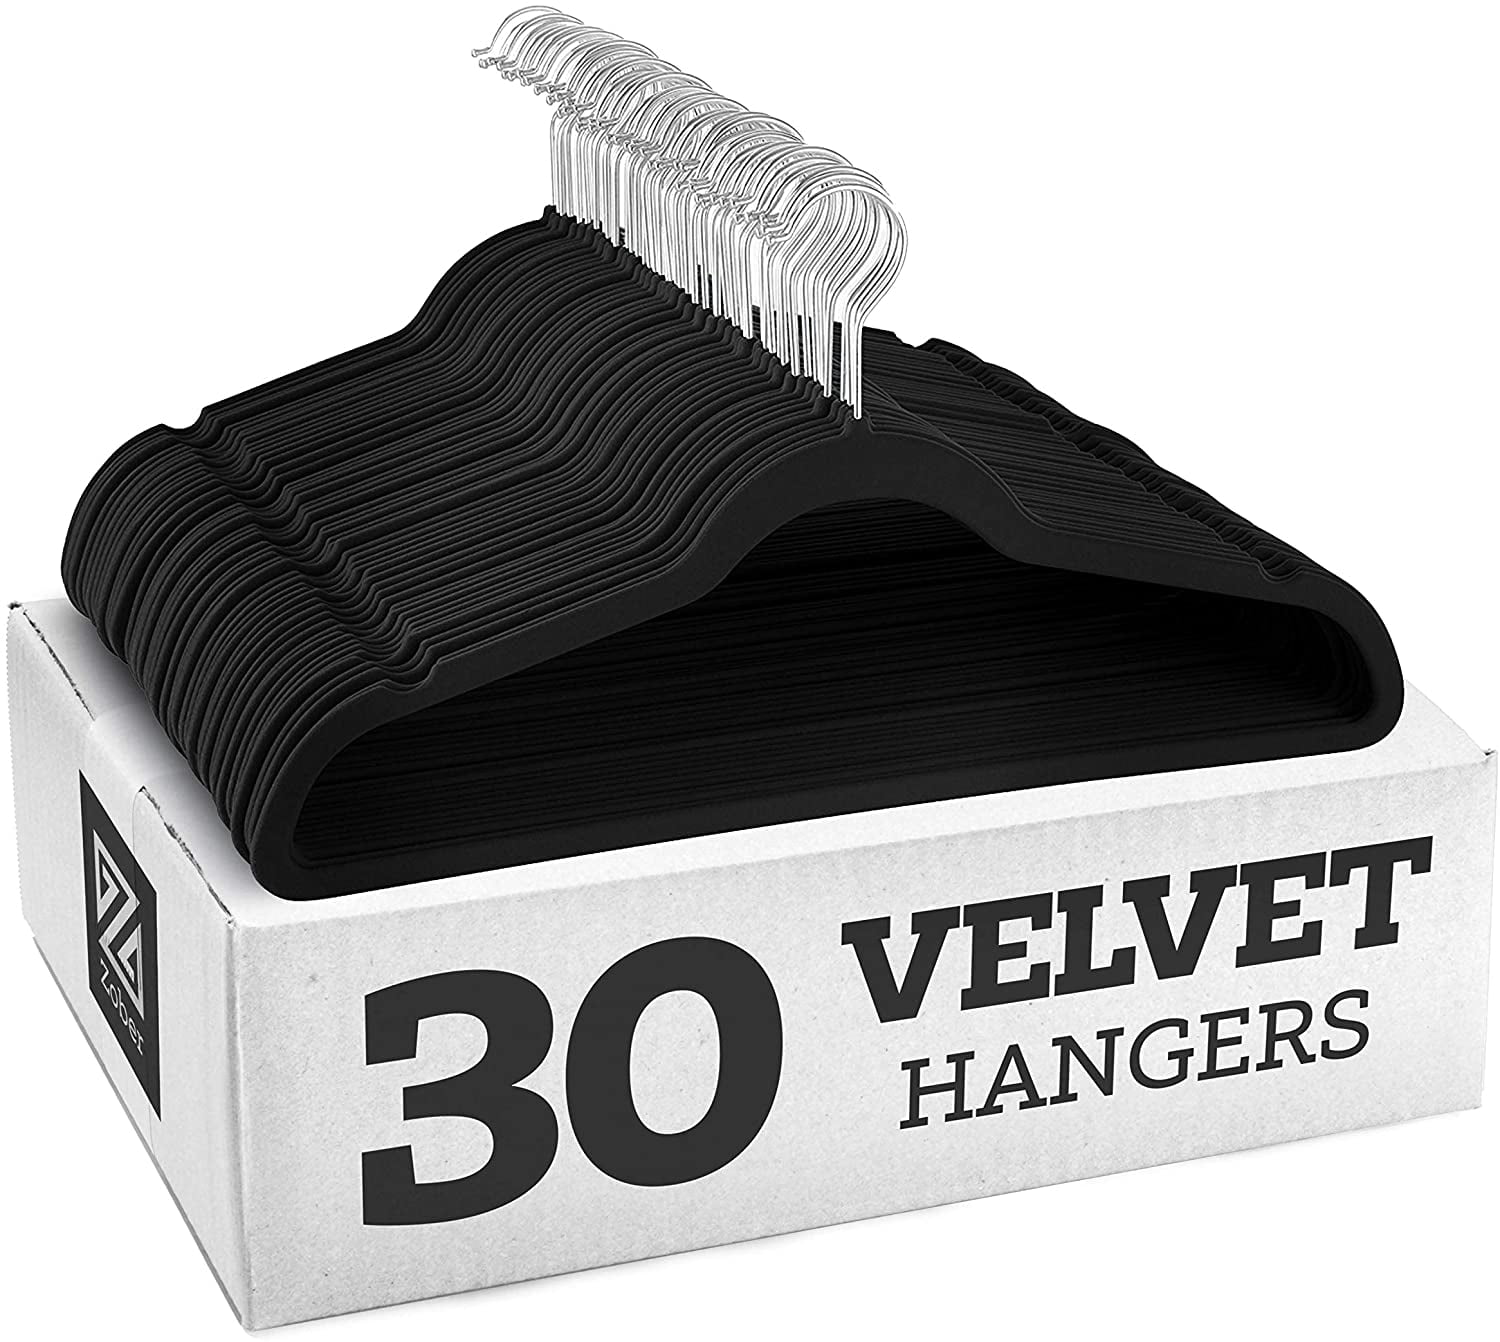 Heavy Duty Slim Velvet Hangers Hanger Central 50 360-Rotating Chrome Swivel Hook Space Saving Ridged Non-Slip Black